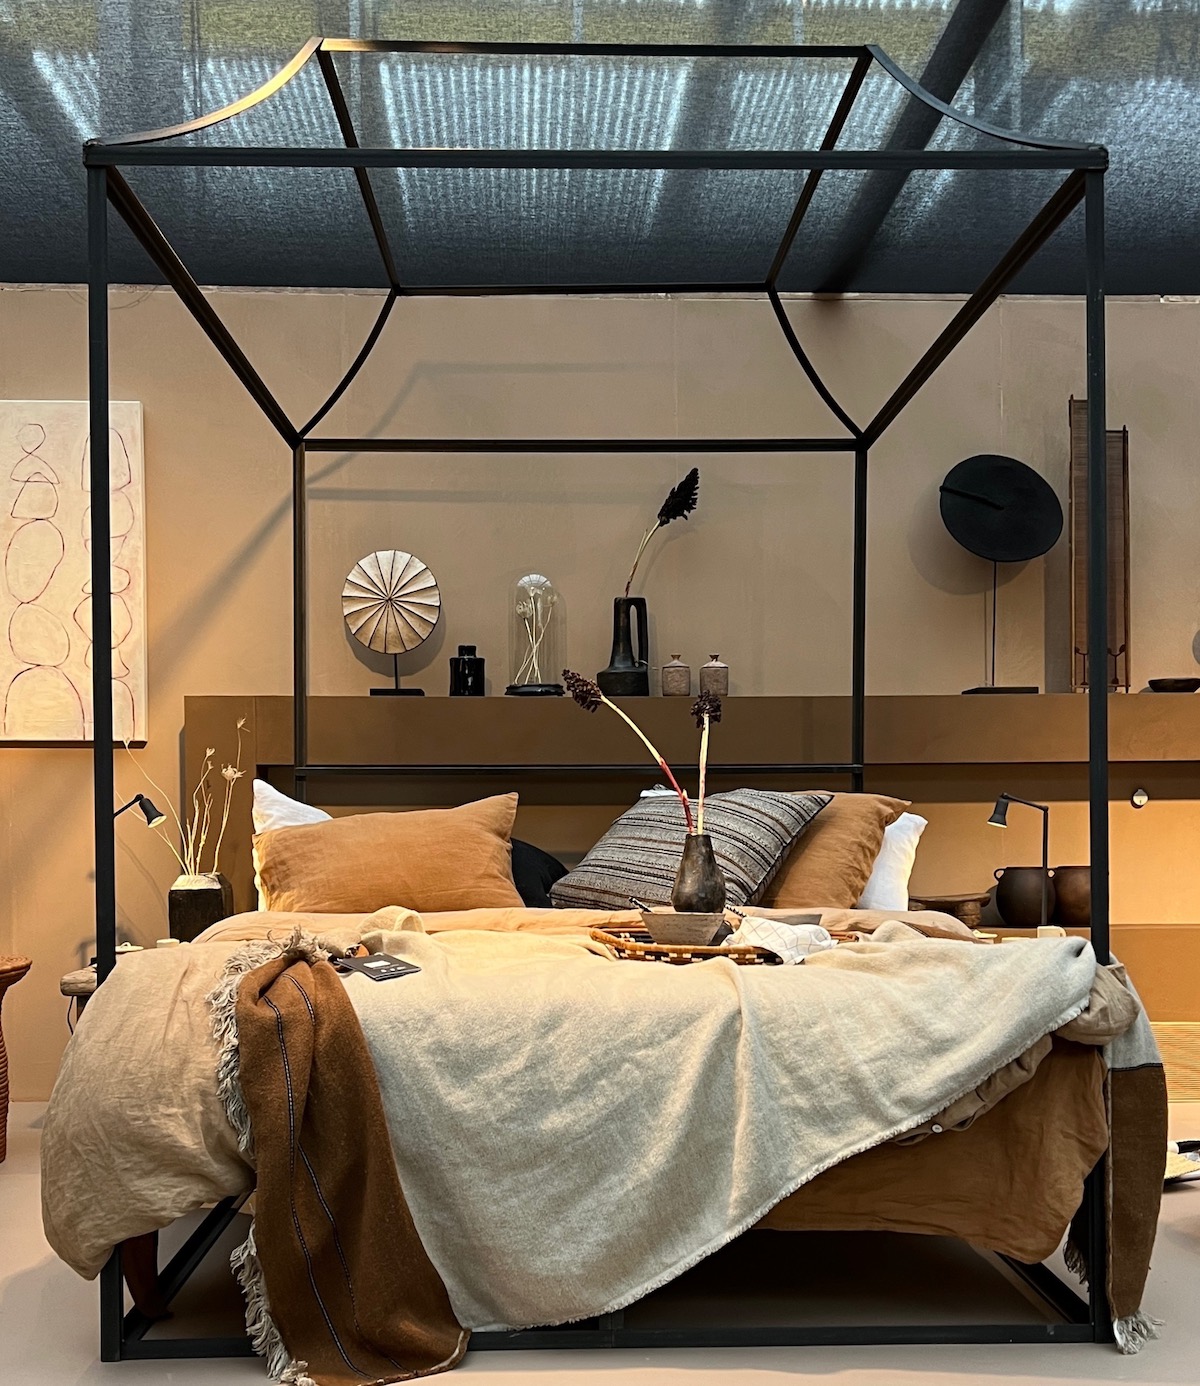 A Travel loft designed by Liza Wassenaar at the vtwonen & design fair 2022